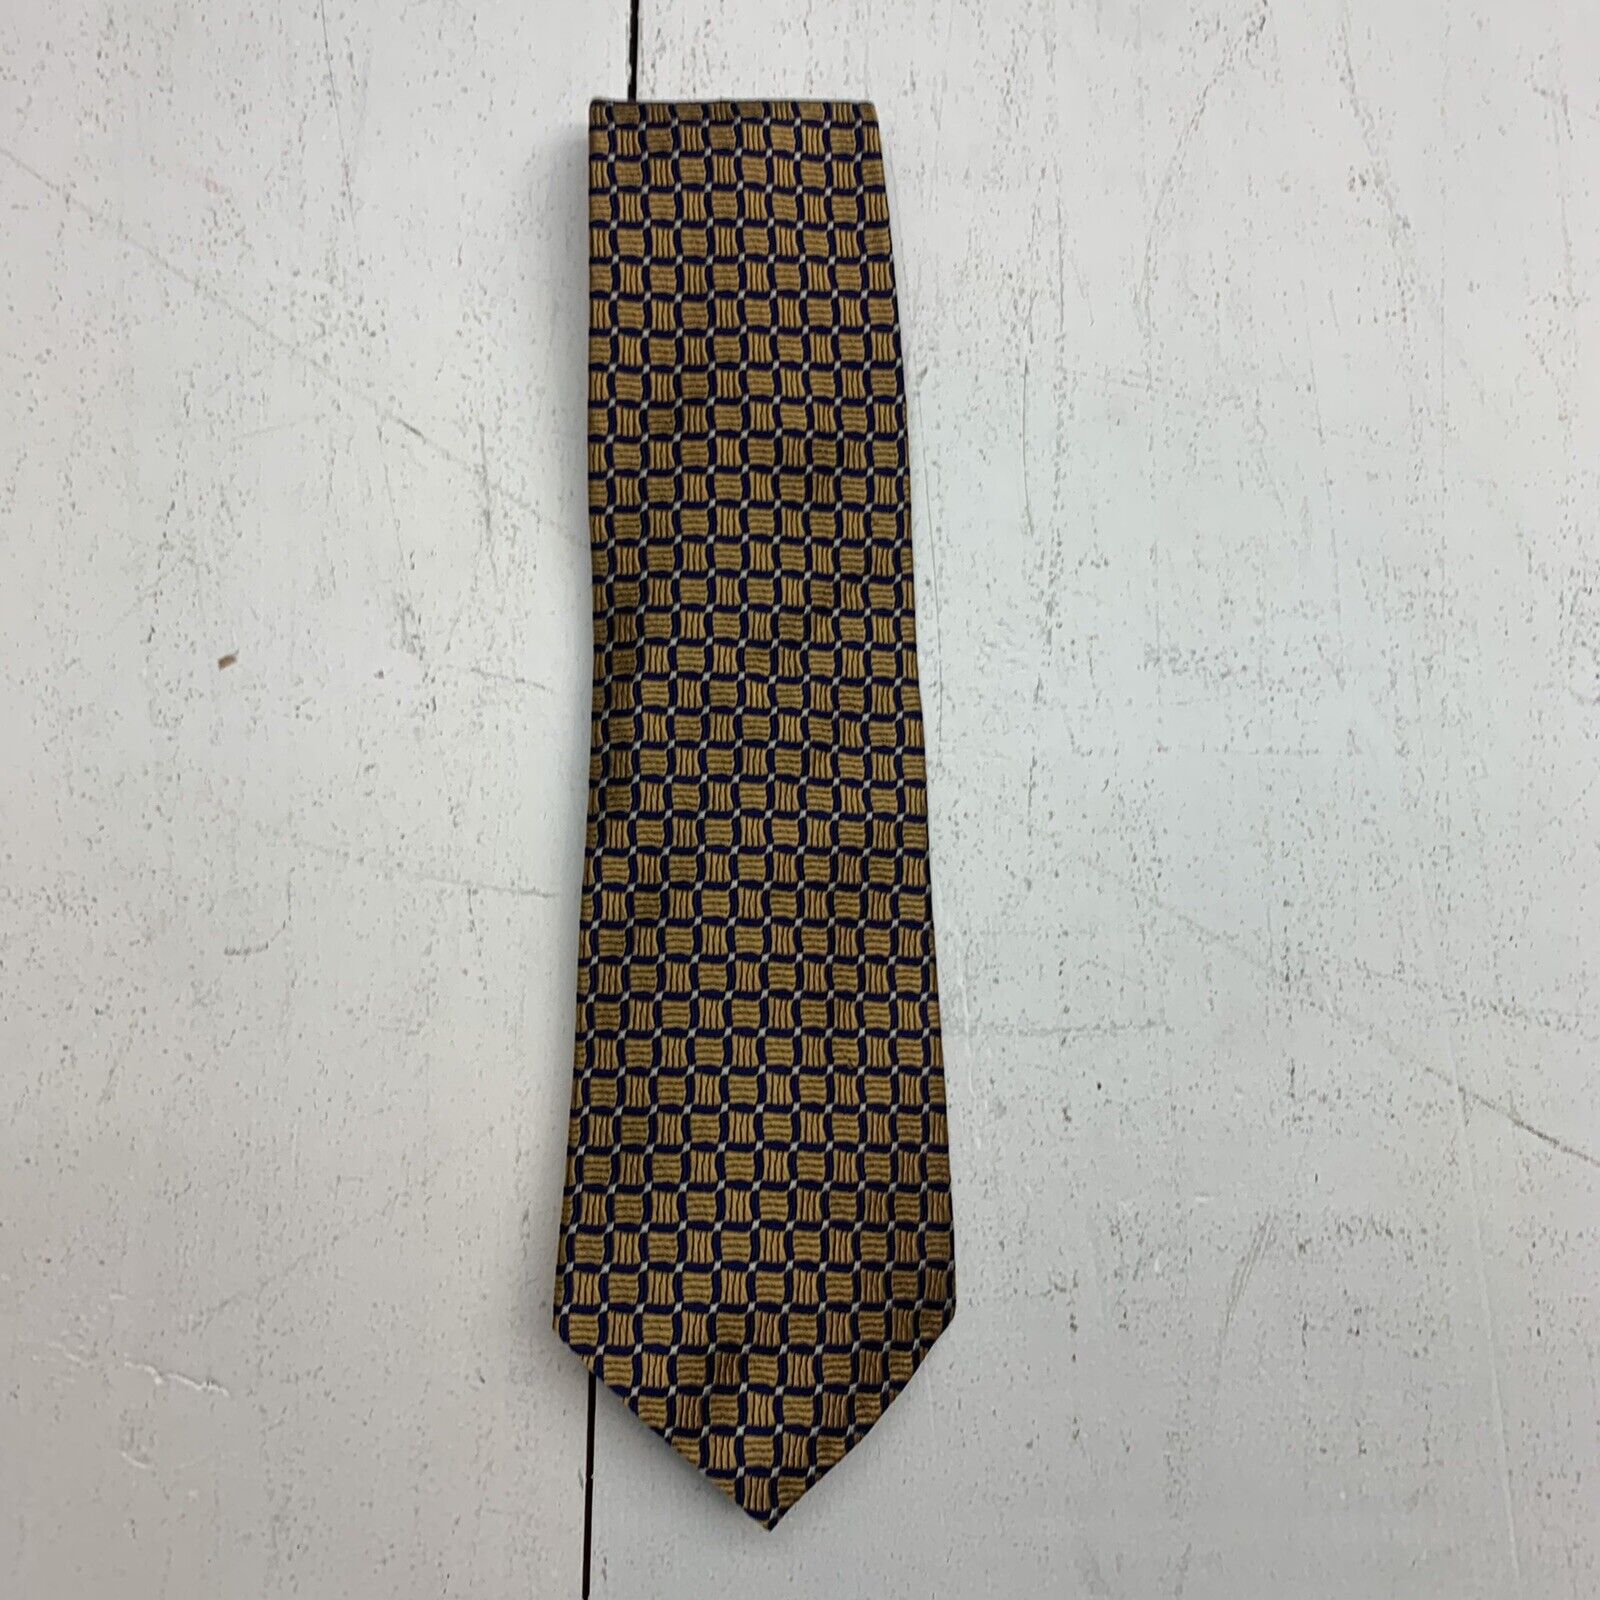 Nautica - Orange Tie with Blue Squares - 100% Silk